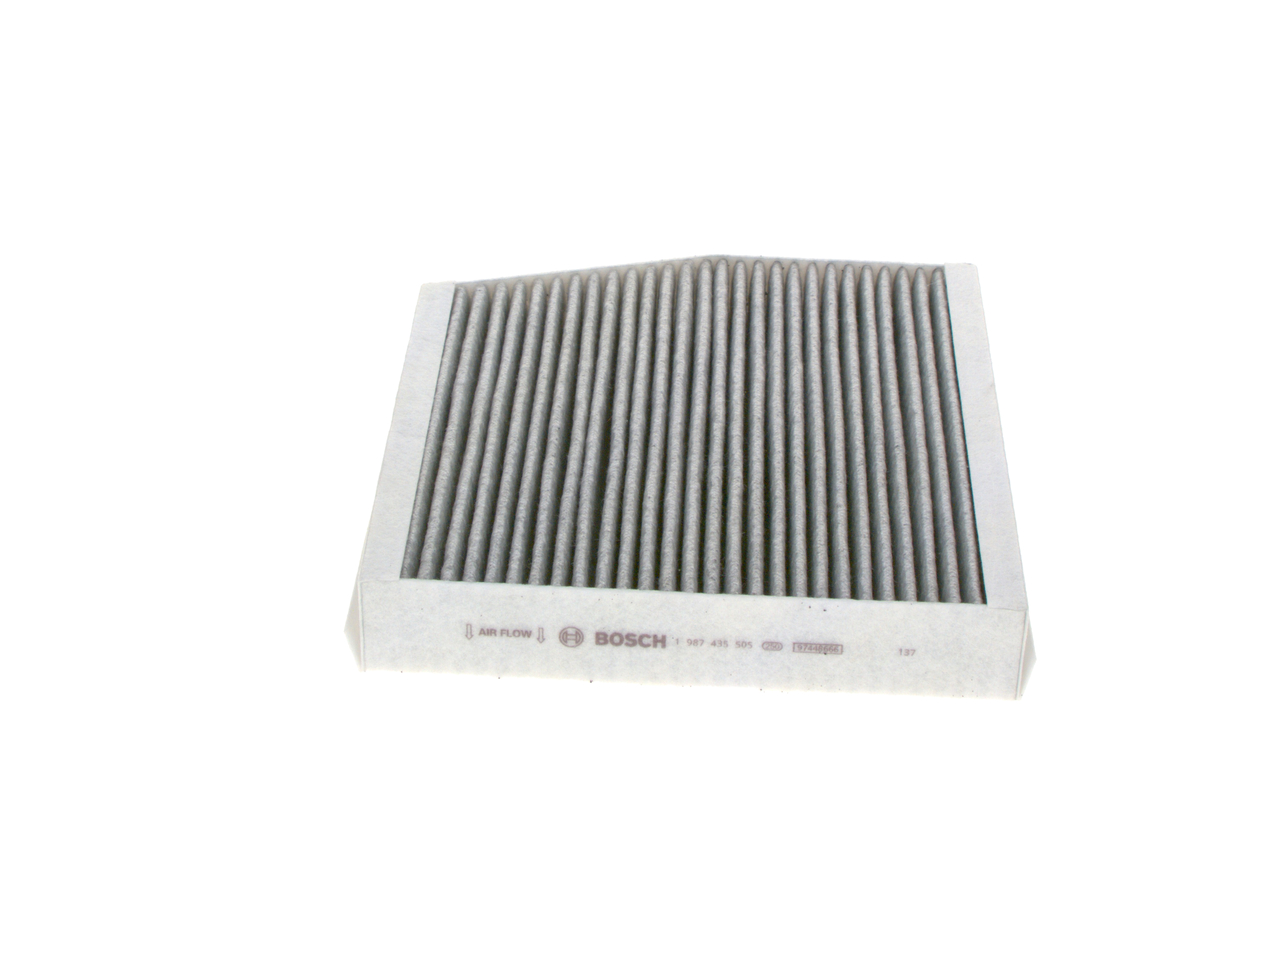 R 5505 Filtro aire habitáculo BOSCH Filtro de carbón activado, 239 mm x 253 mm x 43 mm - 1 987 435 505